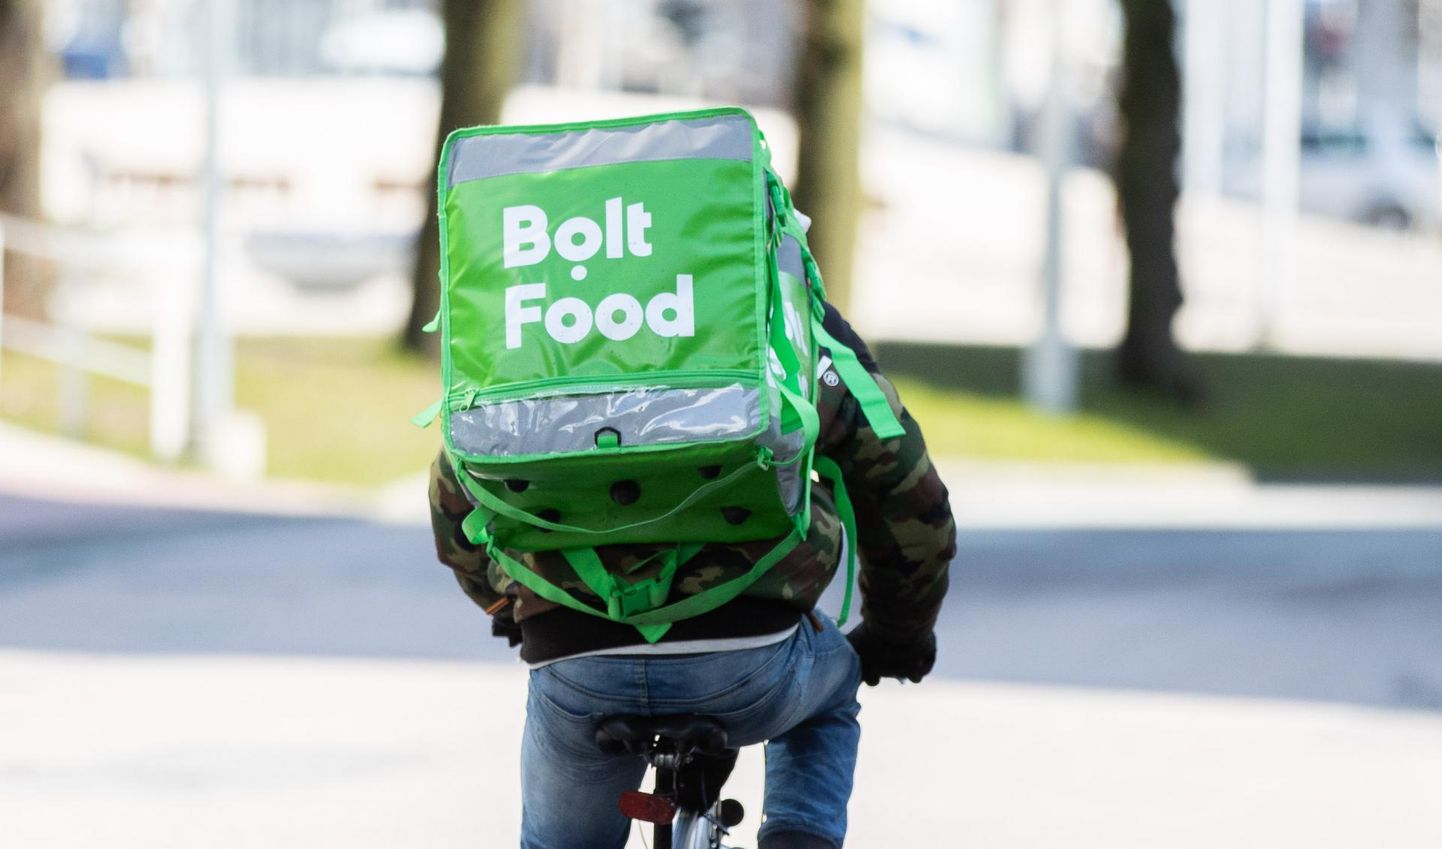 Praegu saab Bolt Foodi teenust kasutada Tallinnas, Tartus, Pärnus ja Narvas, kuid firma esindaja sõnul hakkavad varsti toidukullerid liikuma ka Viljandis. Foto on illustratiivne ja ei oma seost ettevõttega.